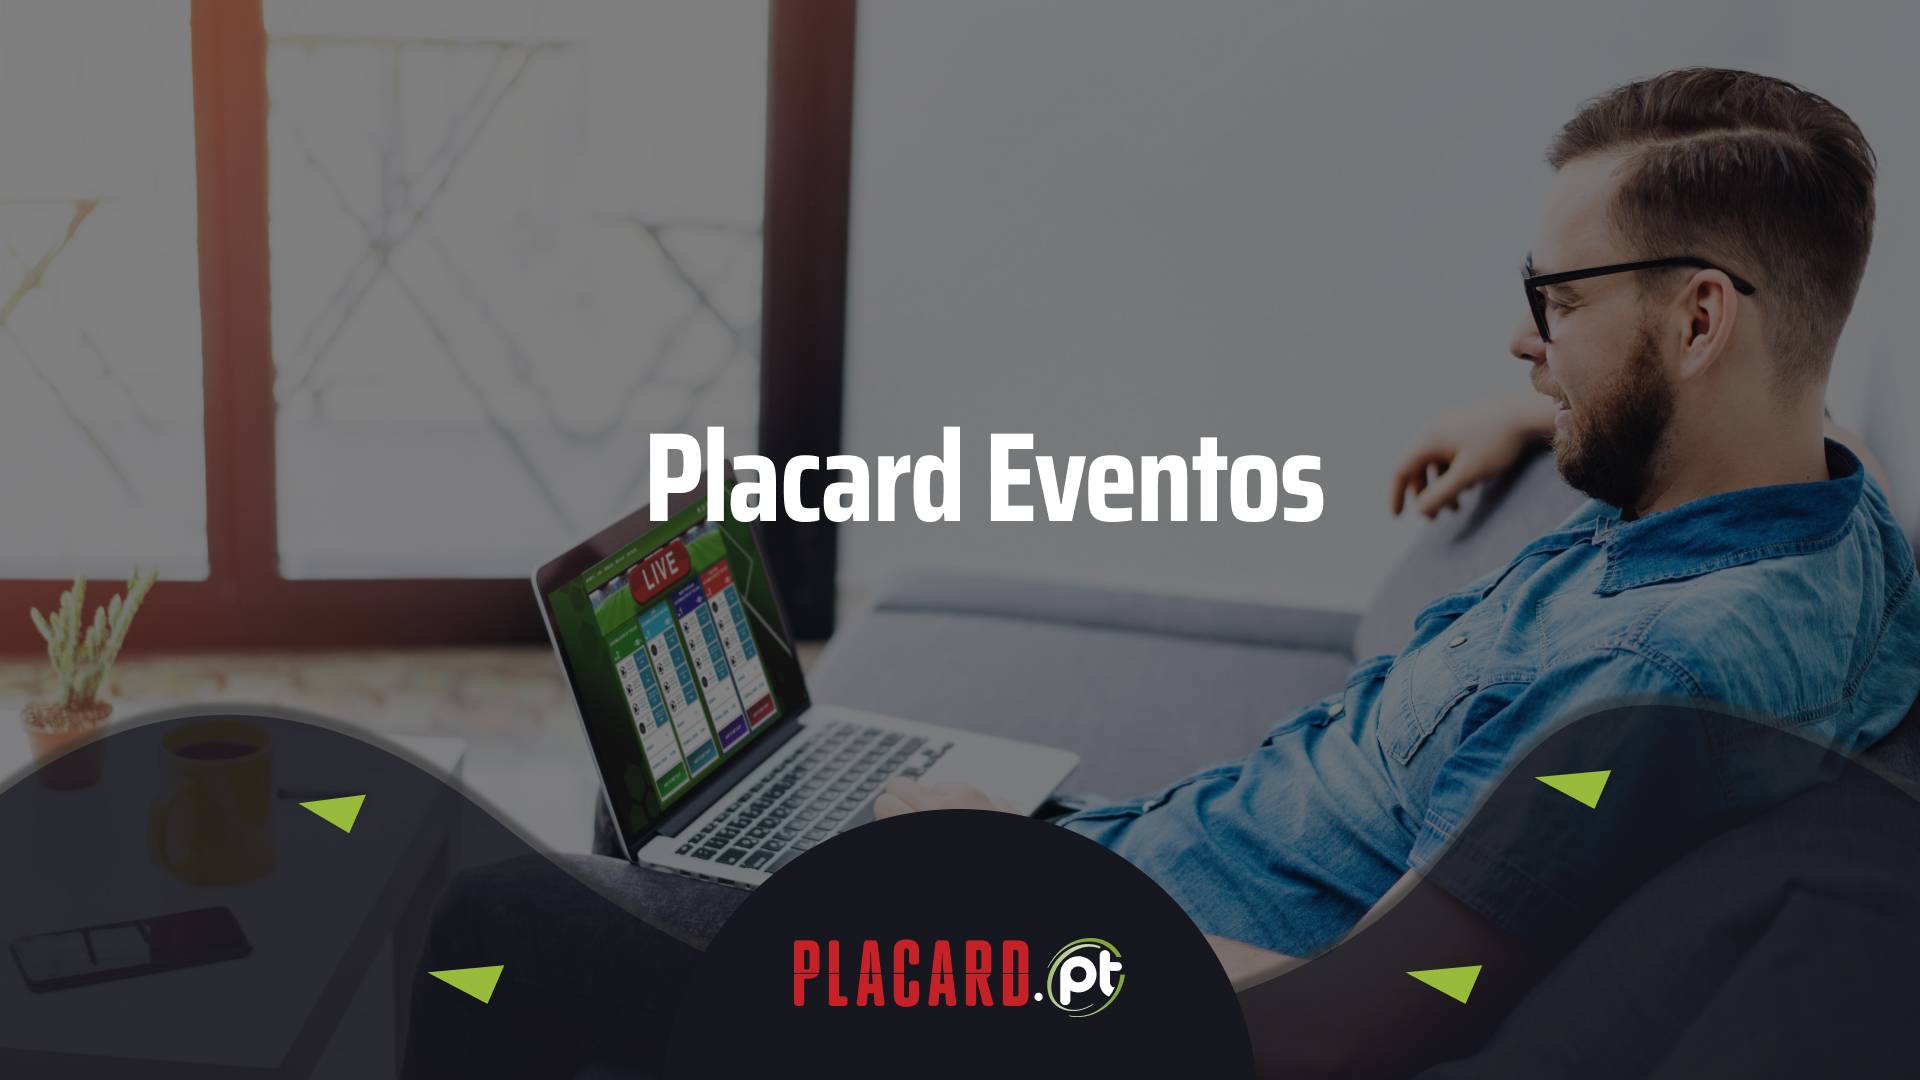 Placard eventos - Placard eventos: As melhores apostas em futebol